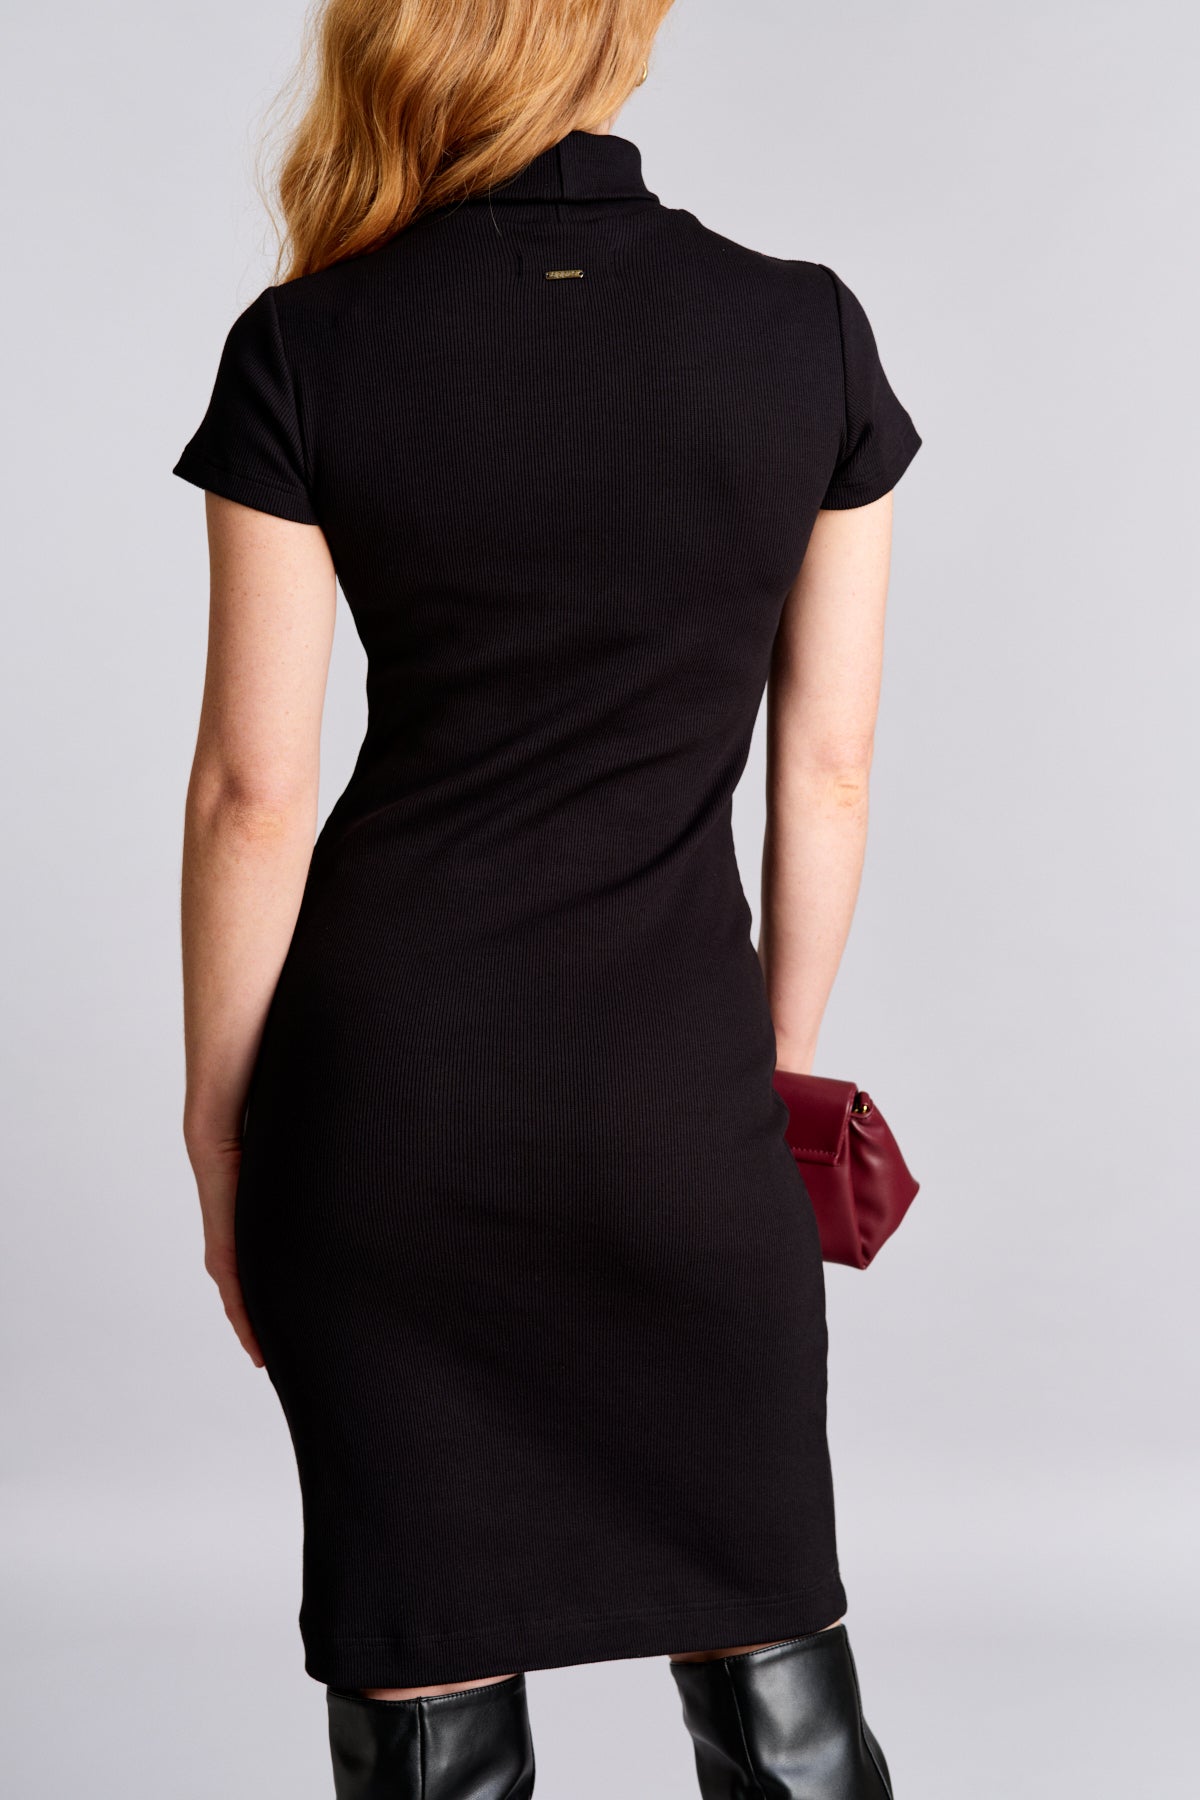 Úpletové šaty s rolákem z organické GOTS bavlny - krátký rukáv - černé